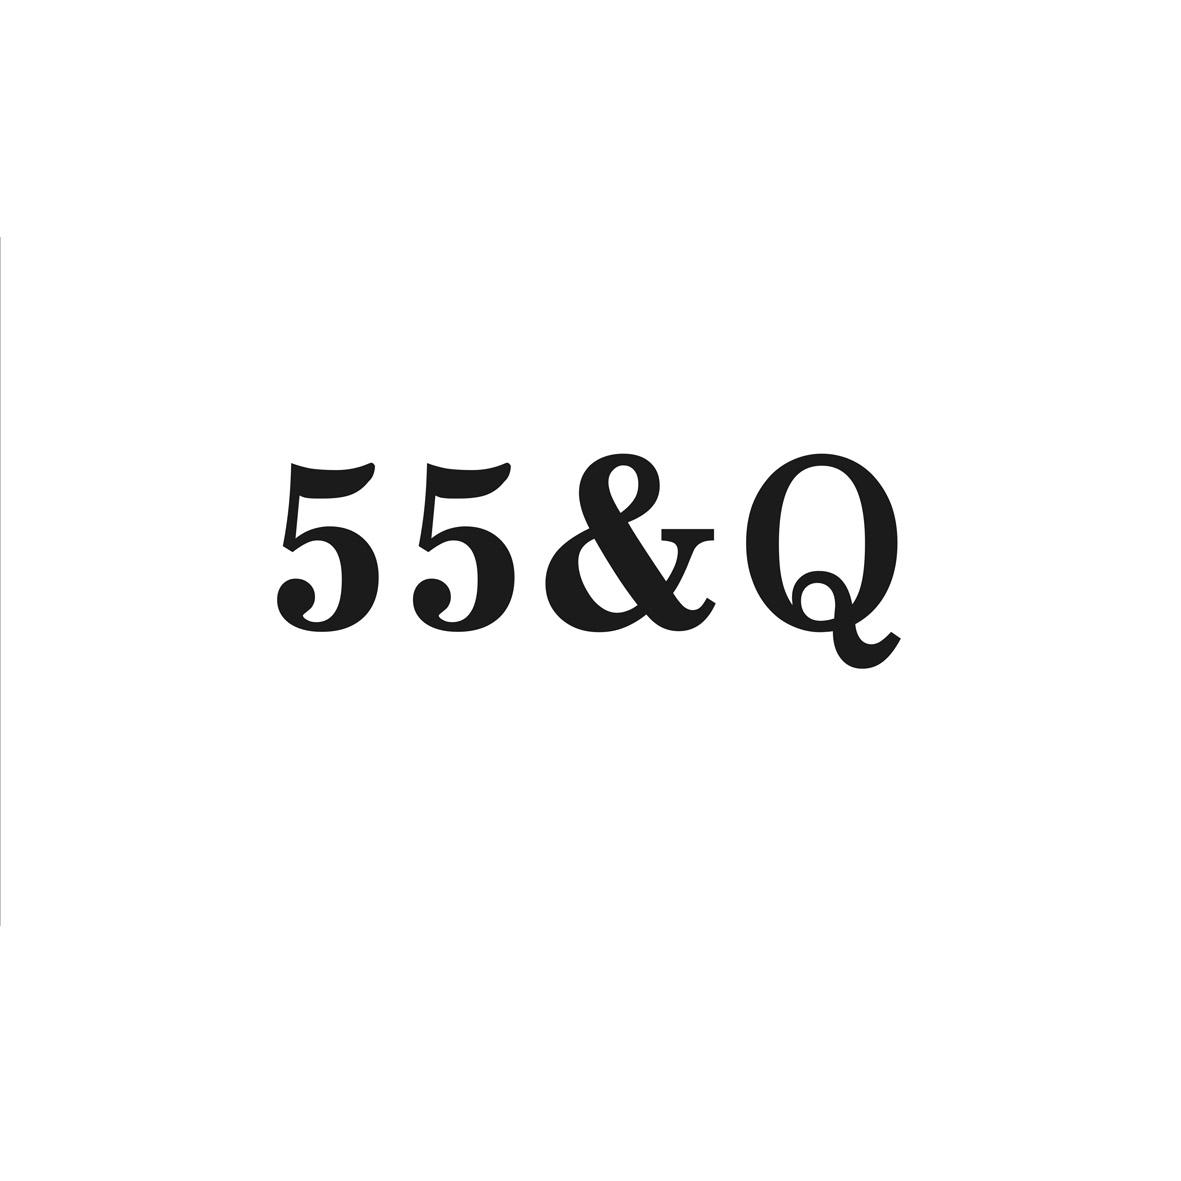 55&Q